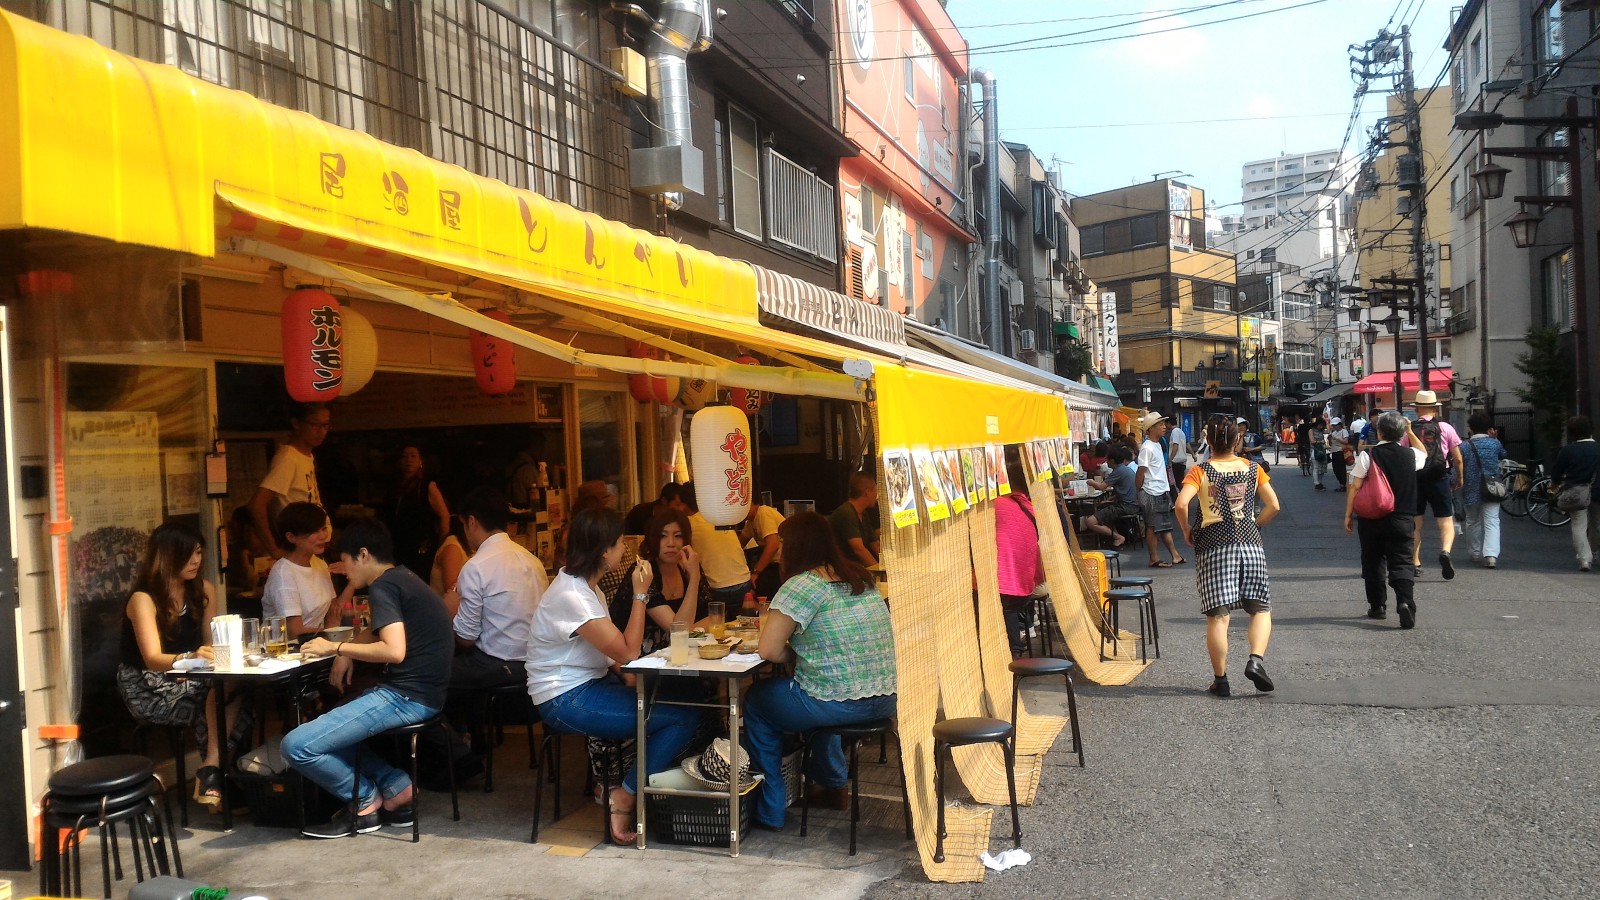 Busy Izakaya at Hoppy Street, Asakusa